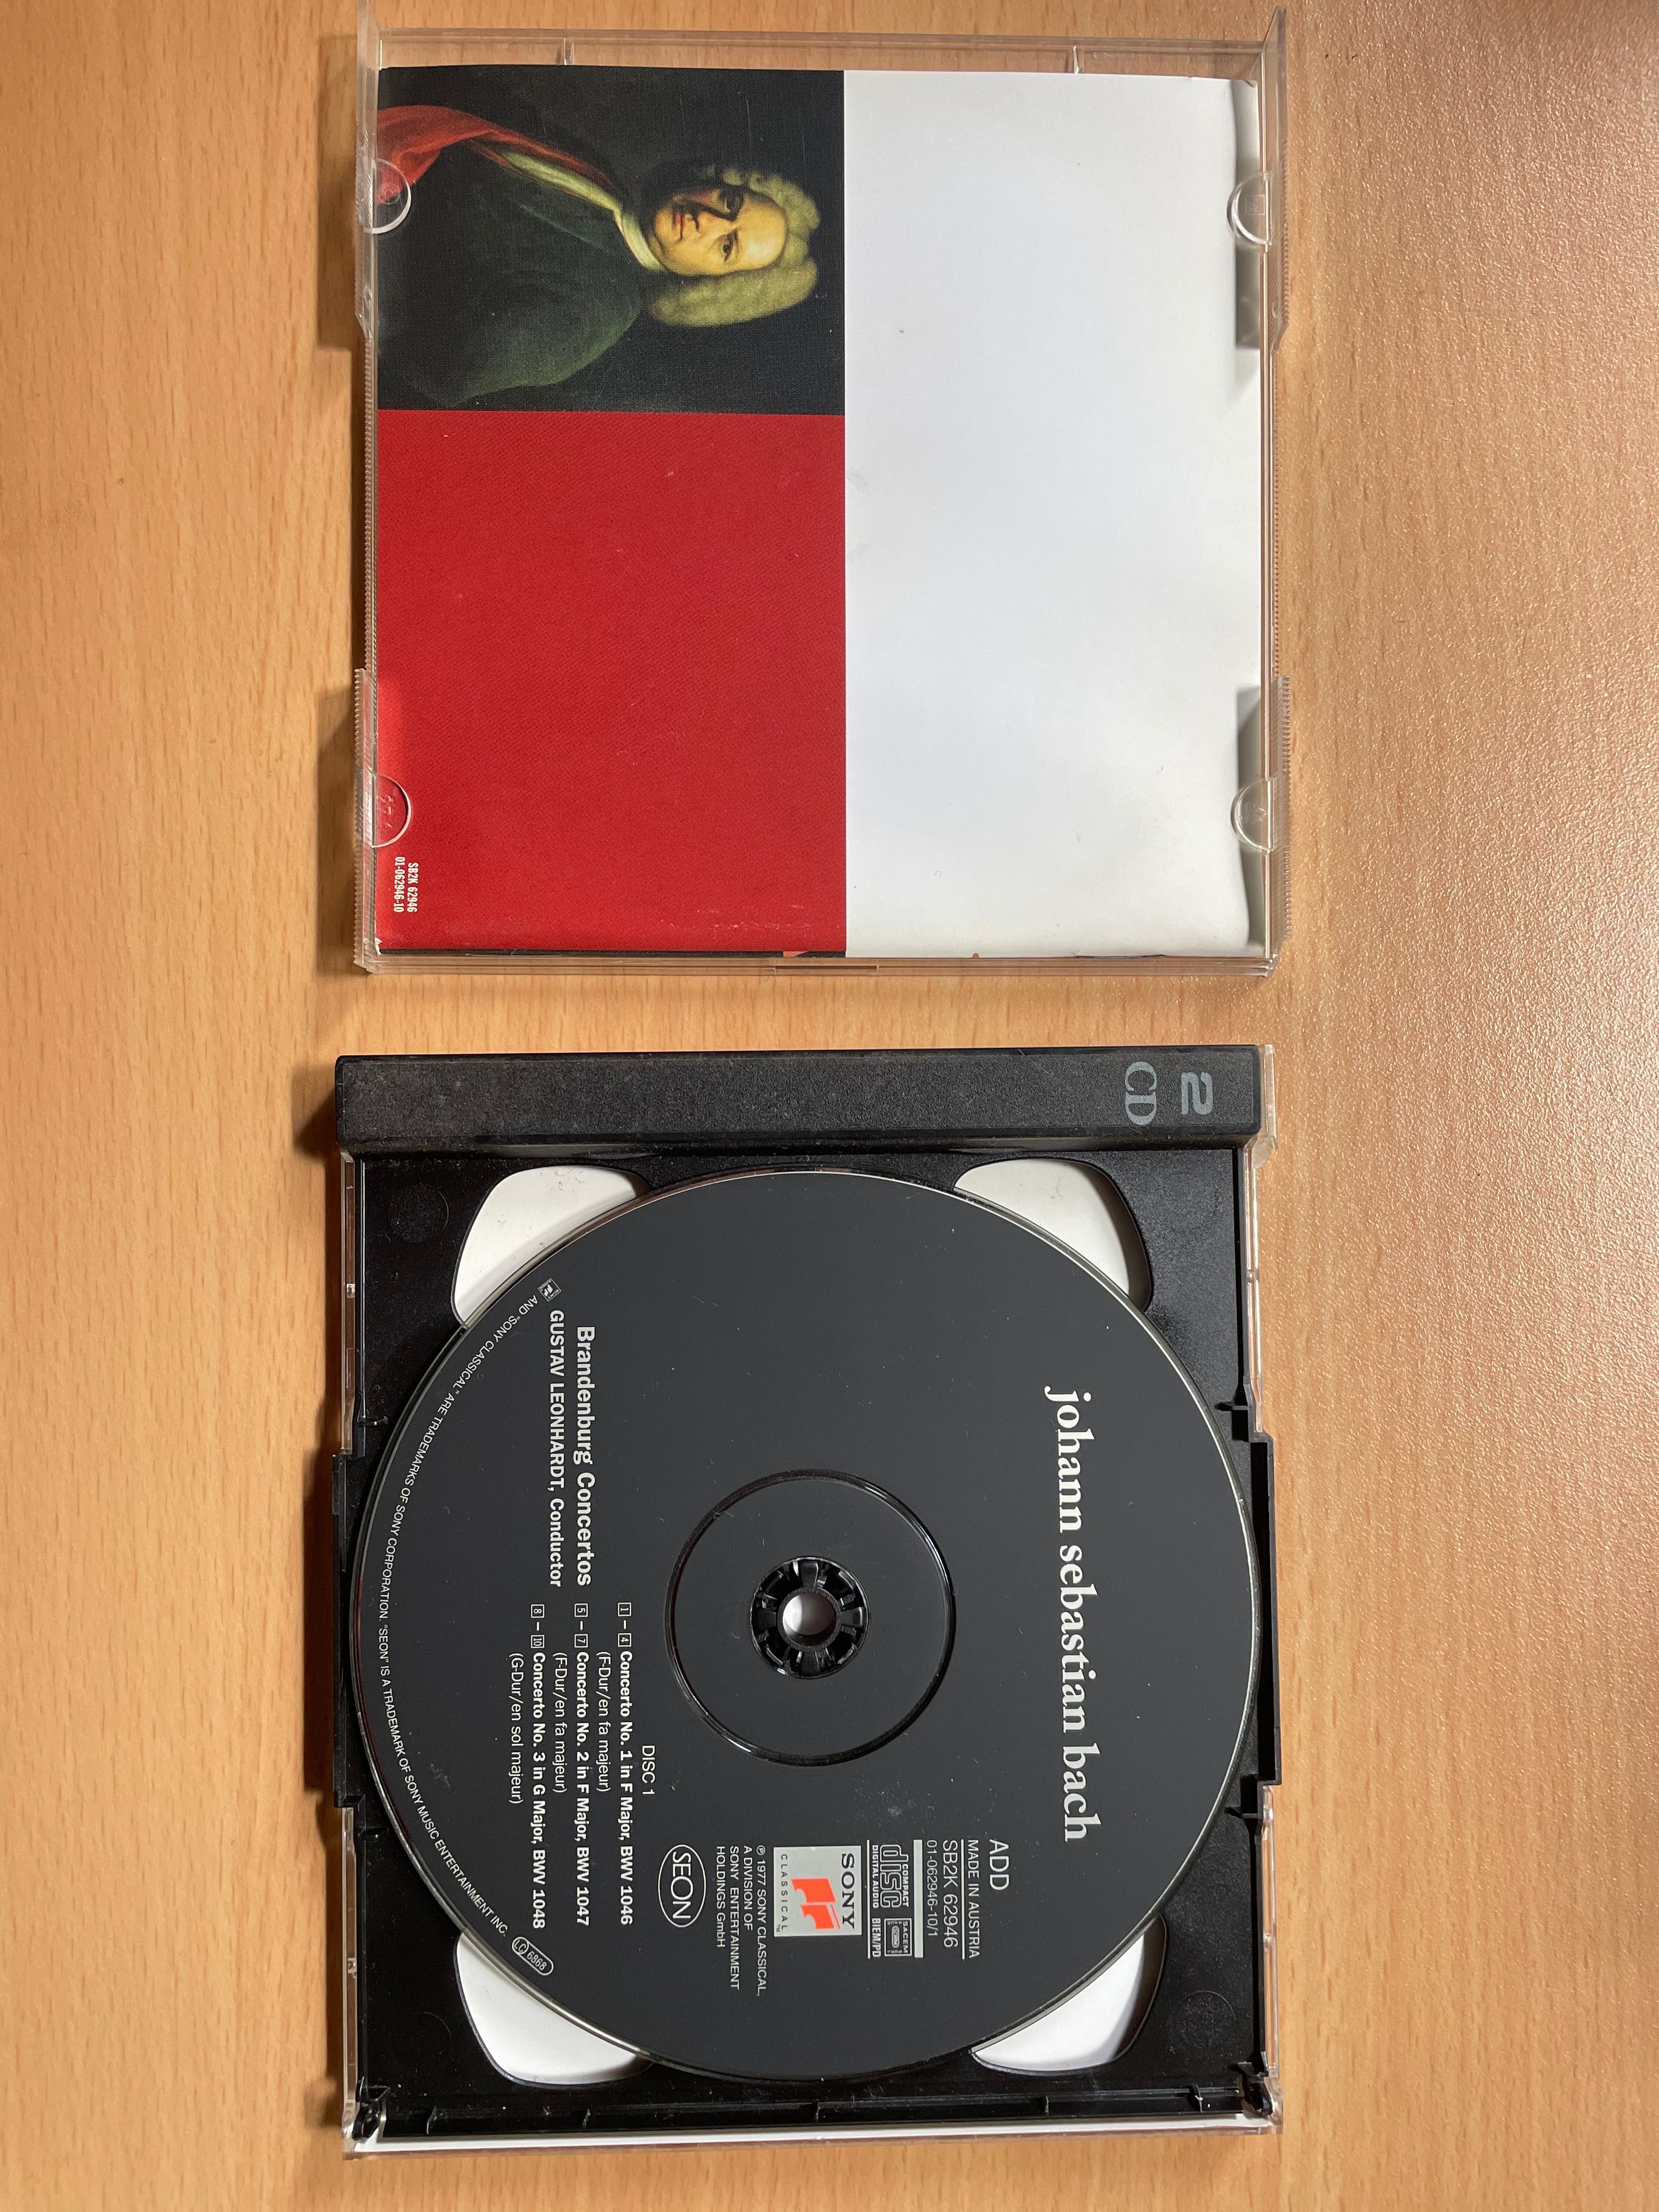 CD duplo 6Concertos brandemburgueses Bach (Brüggen,Kuijkens,Leonhardt)